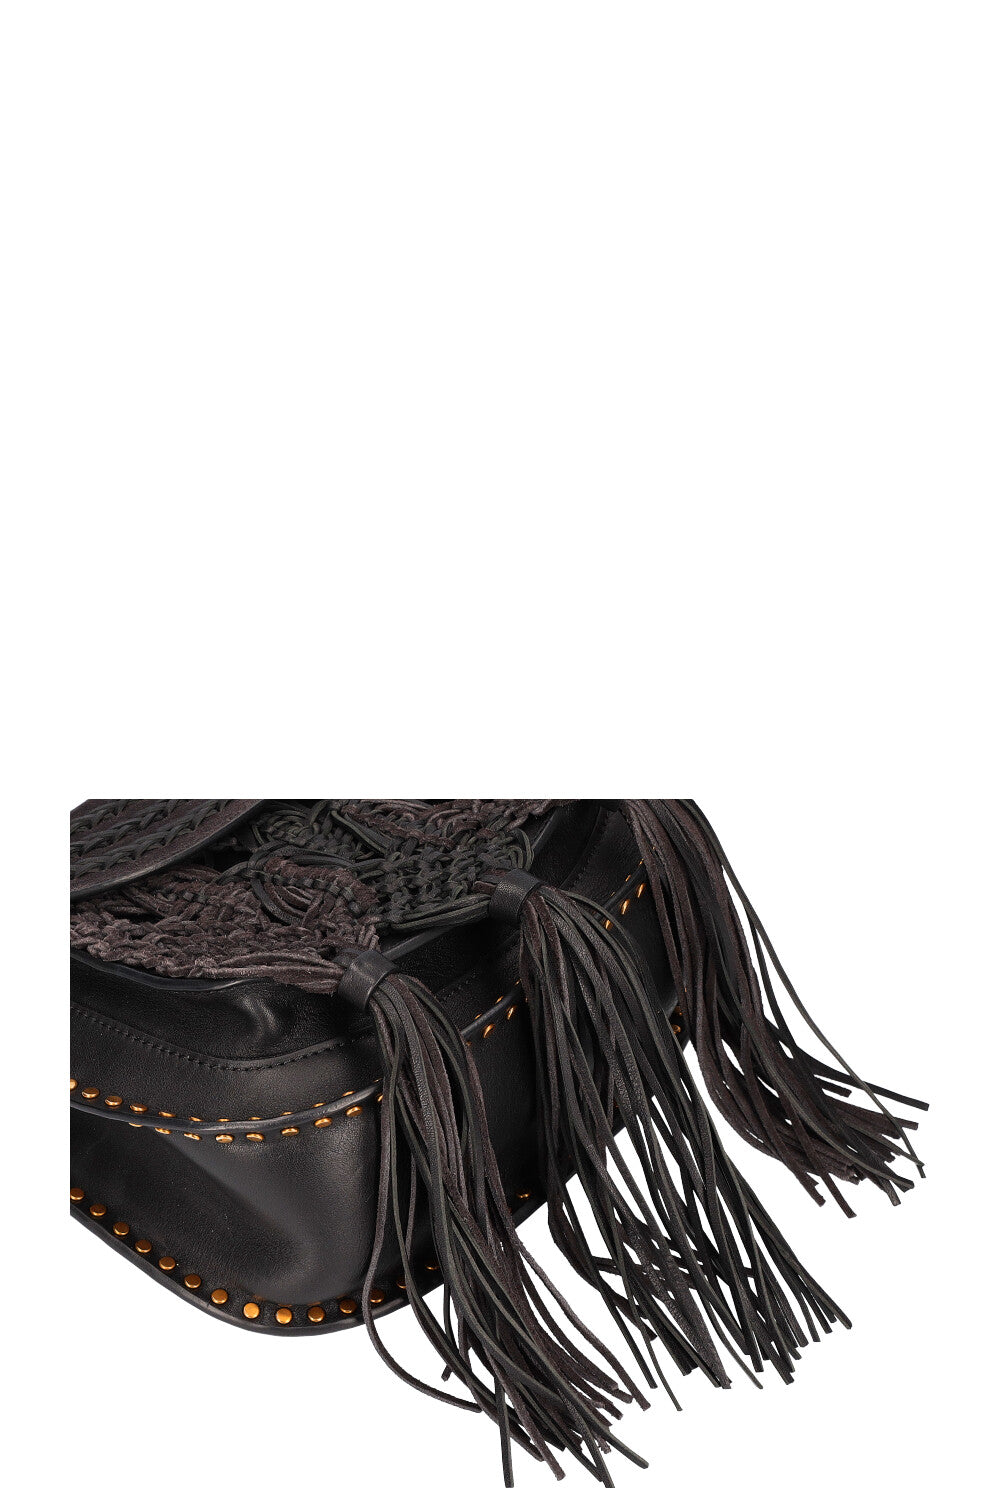 Étoile Noire Handbag Charm – Havre de Luxe